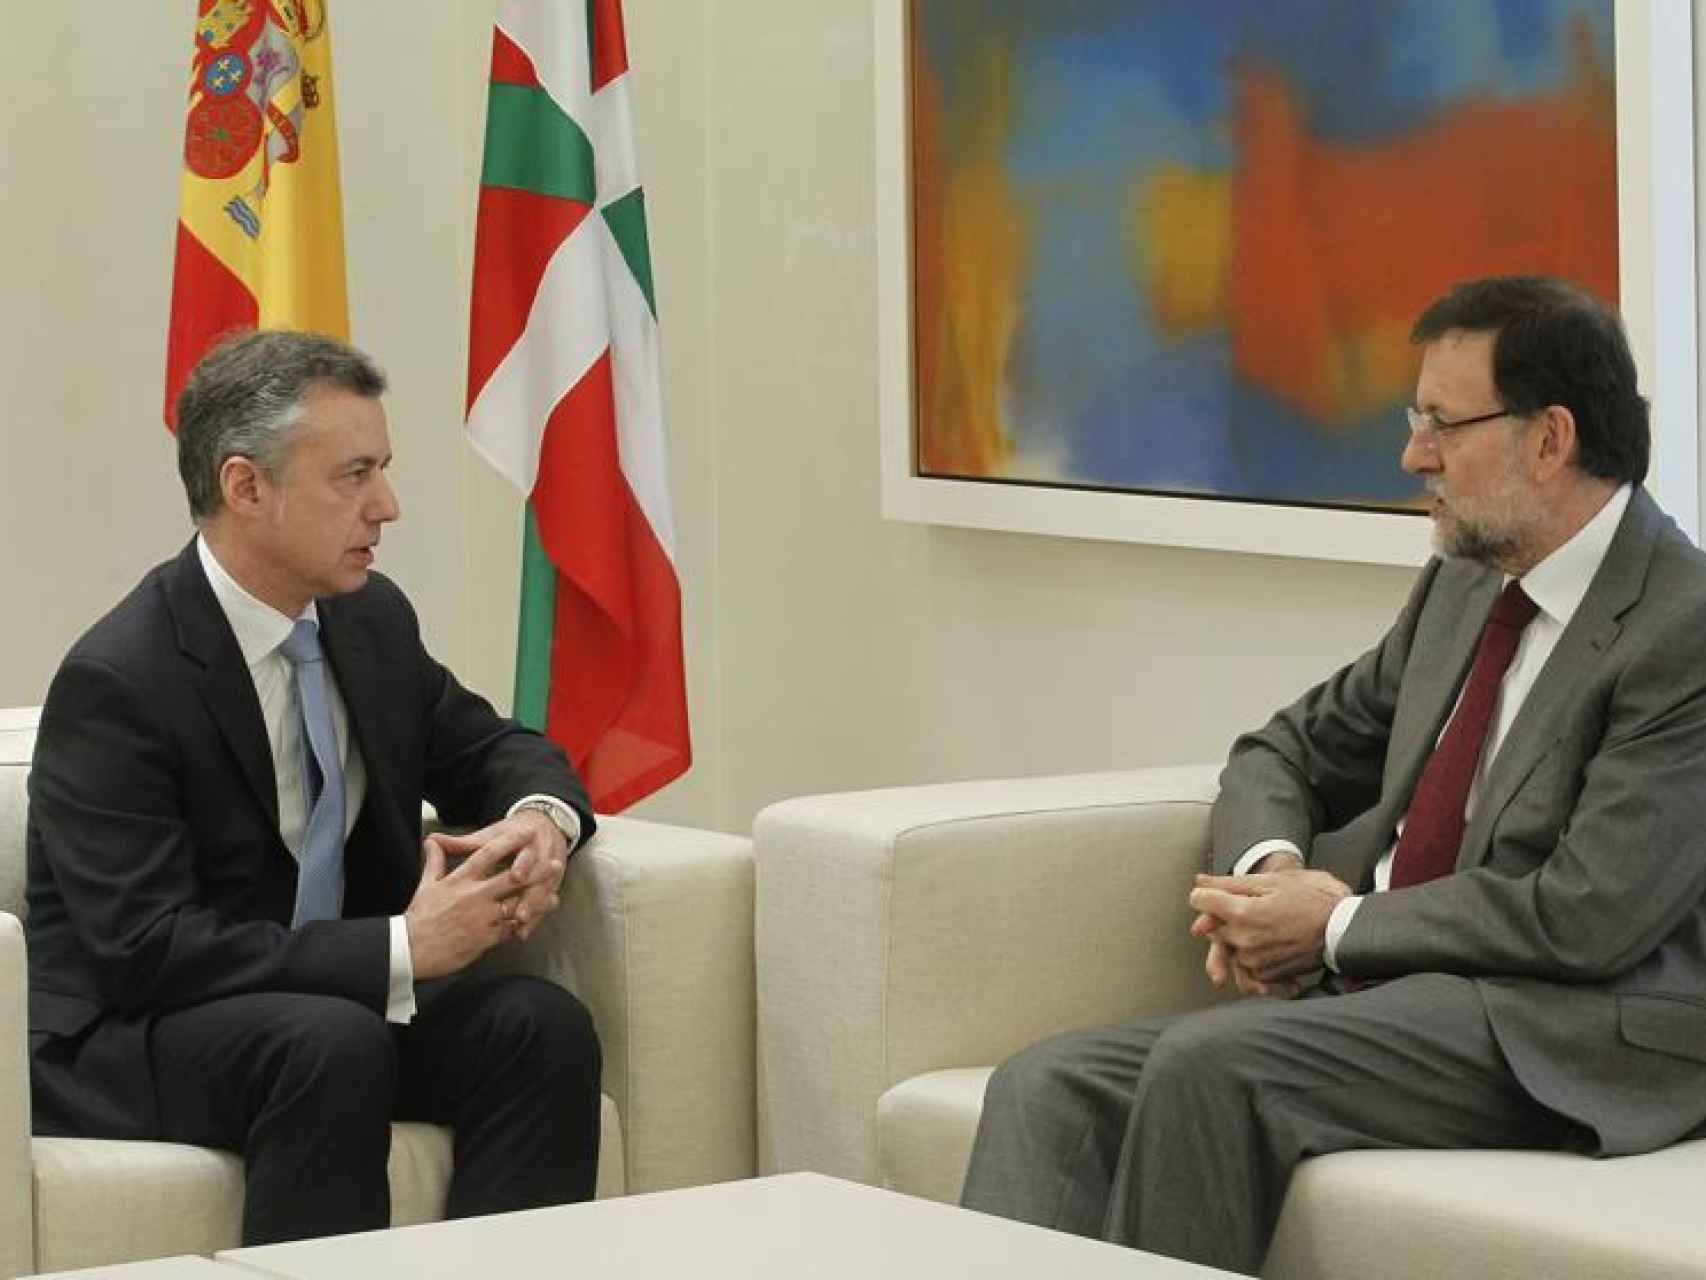 El lehendakari, Íñigo Urkullu, y el presidente del Gobierno, Mariano Rajoy